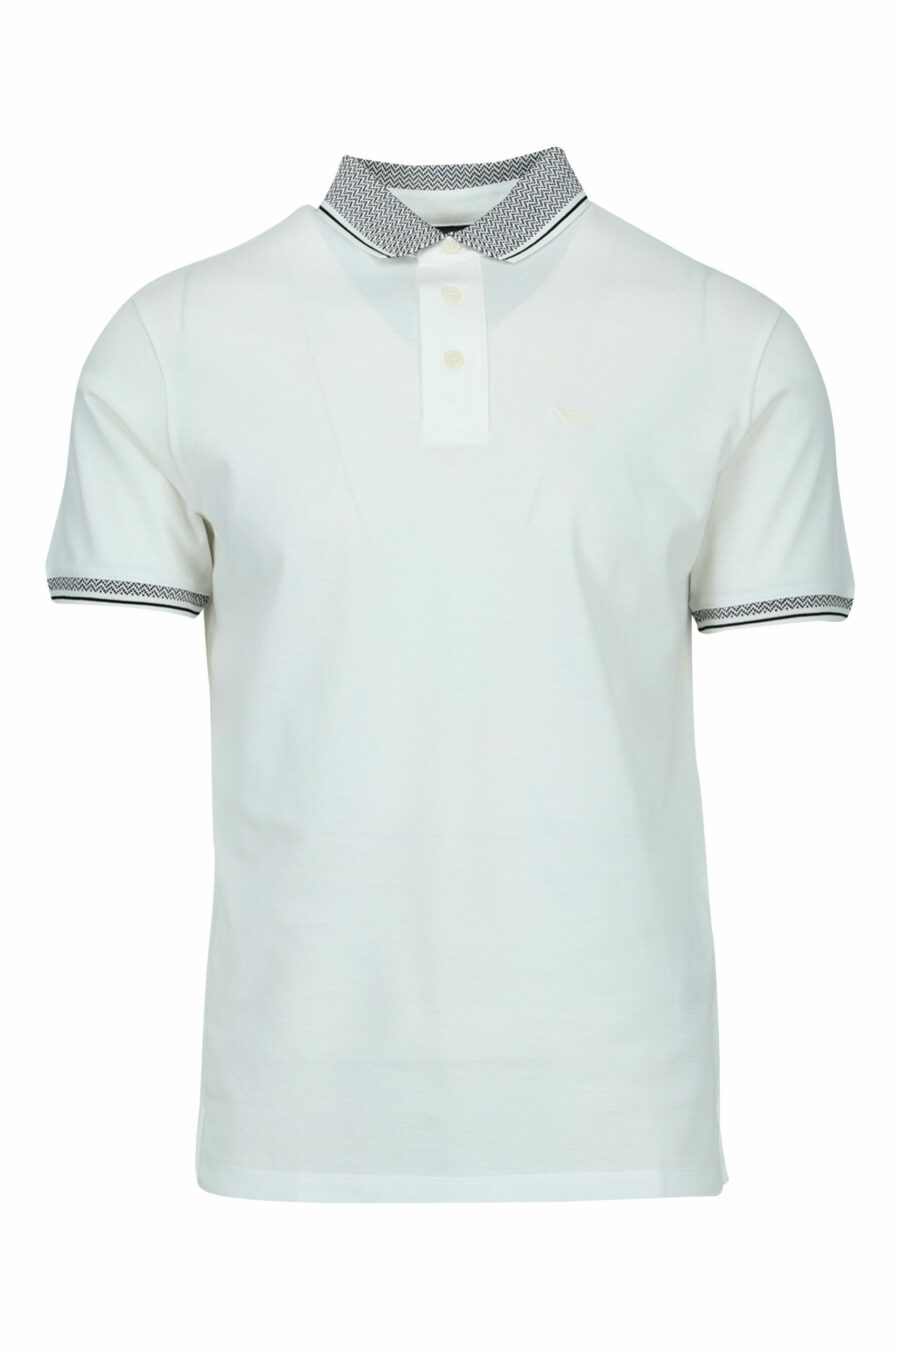 Weißes Poloshirt mit klassisch grauem Kragen - 8058947967995 skaliert